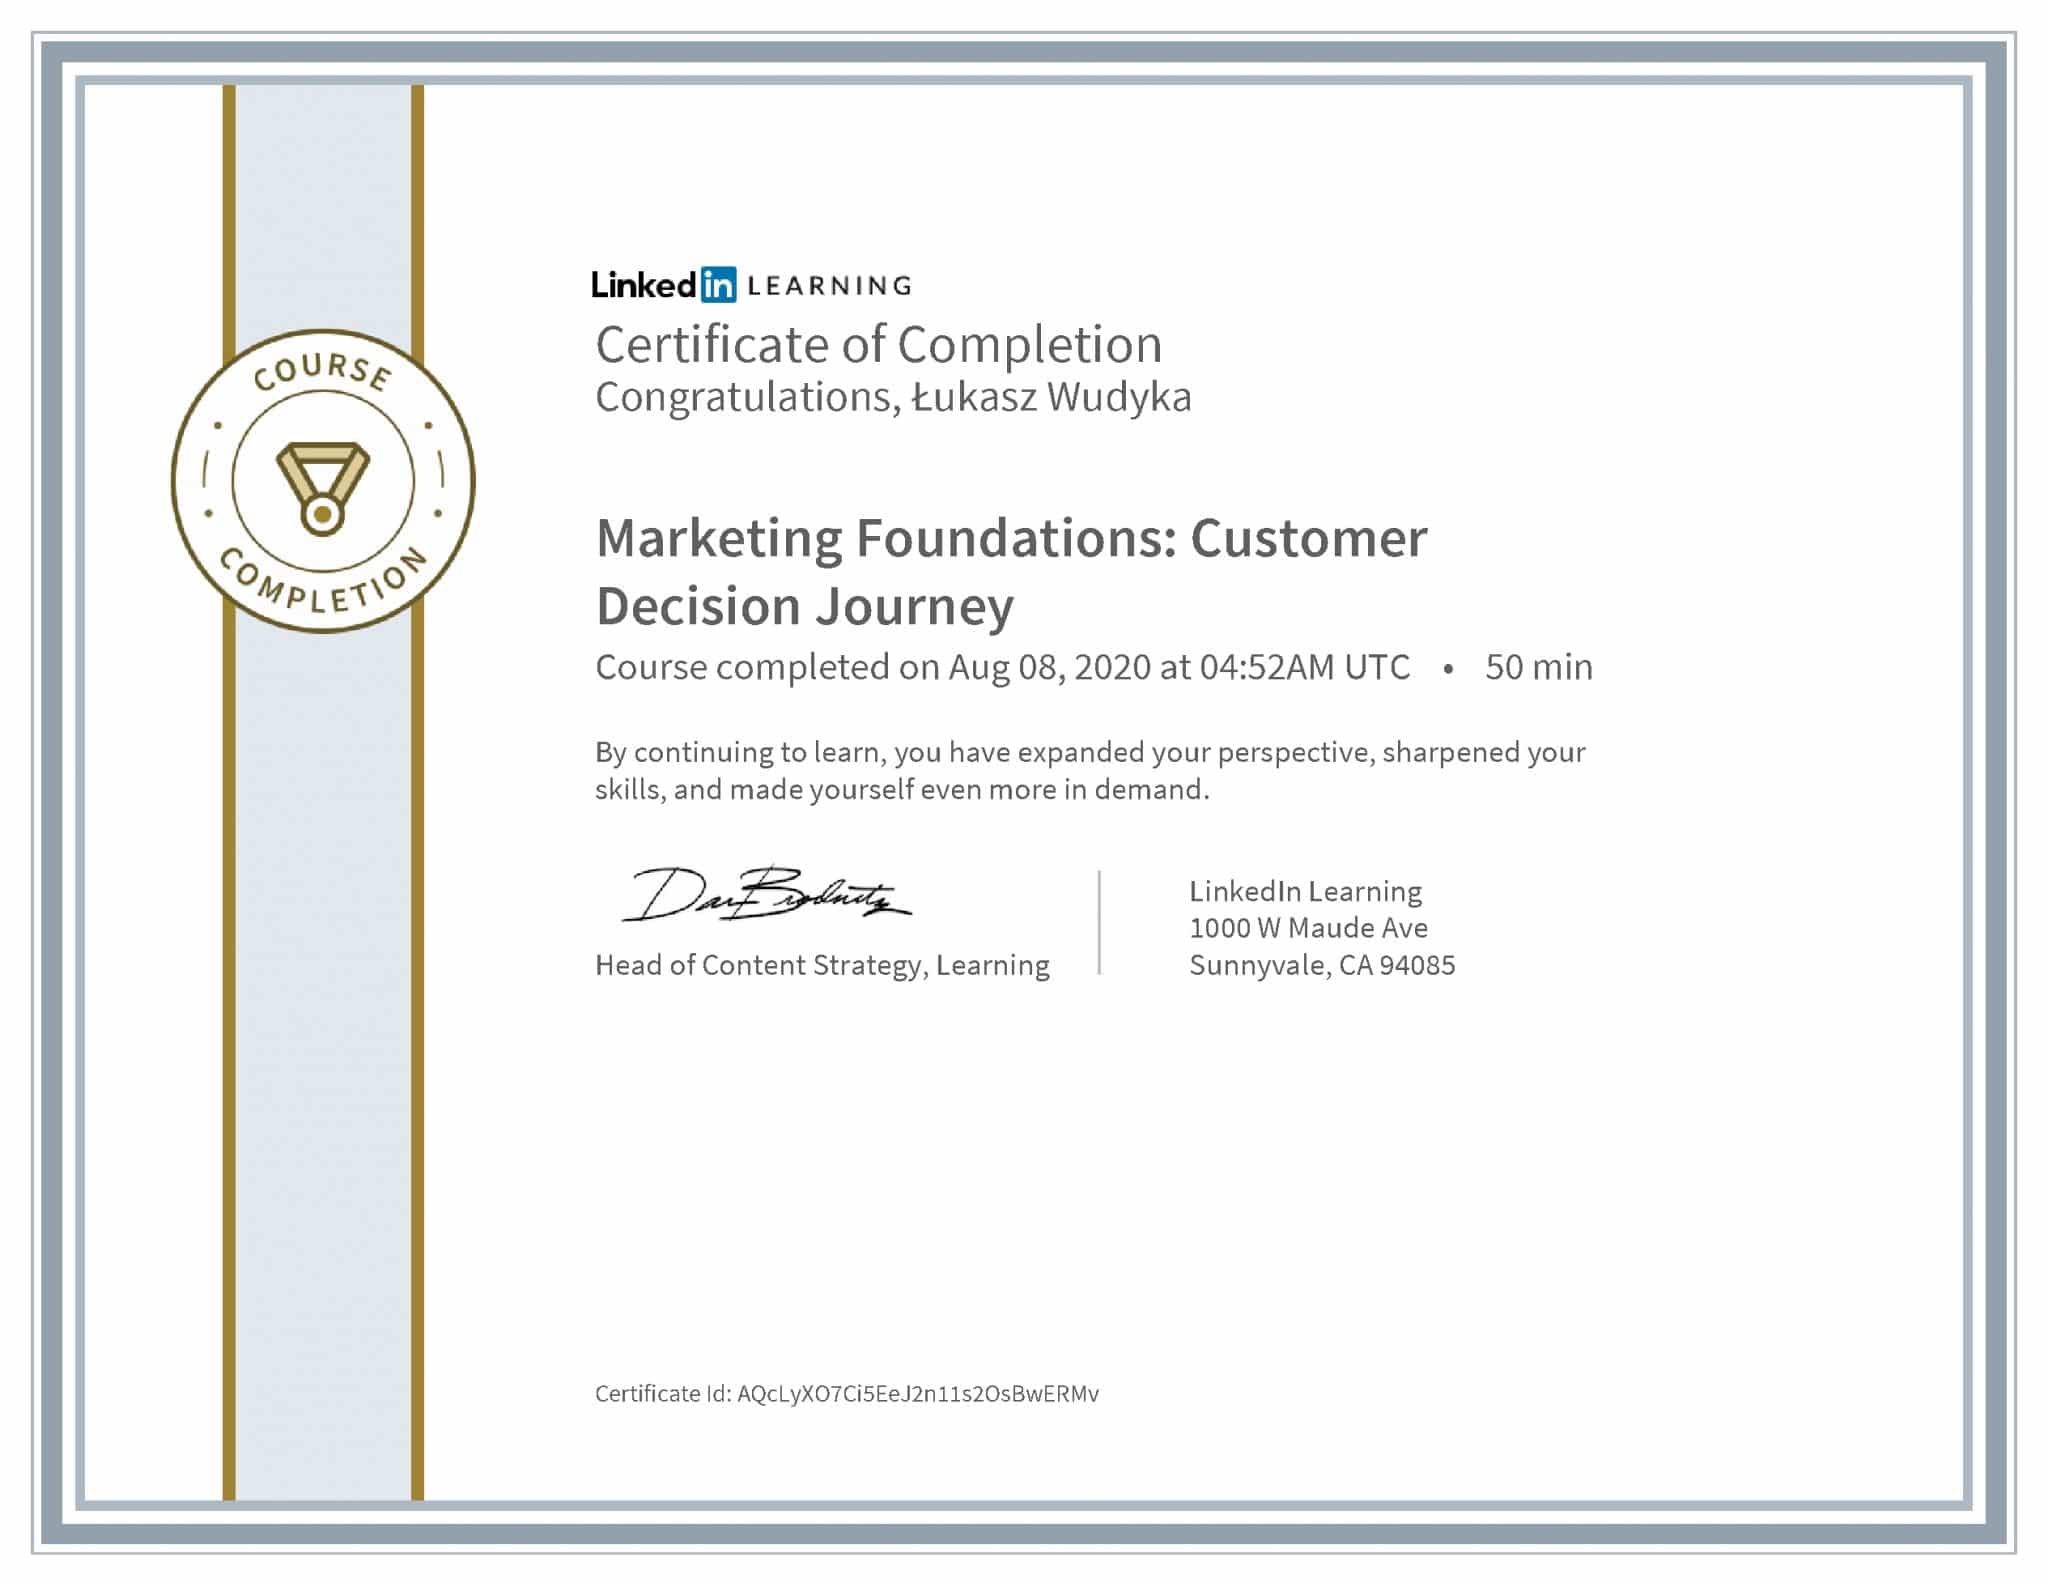 Łukasz Wudyka certyfikat LinkedIn Marketing Foundations: Customer Decision Journey